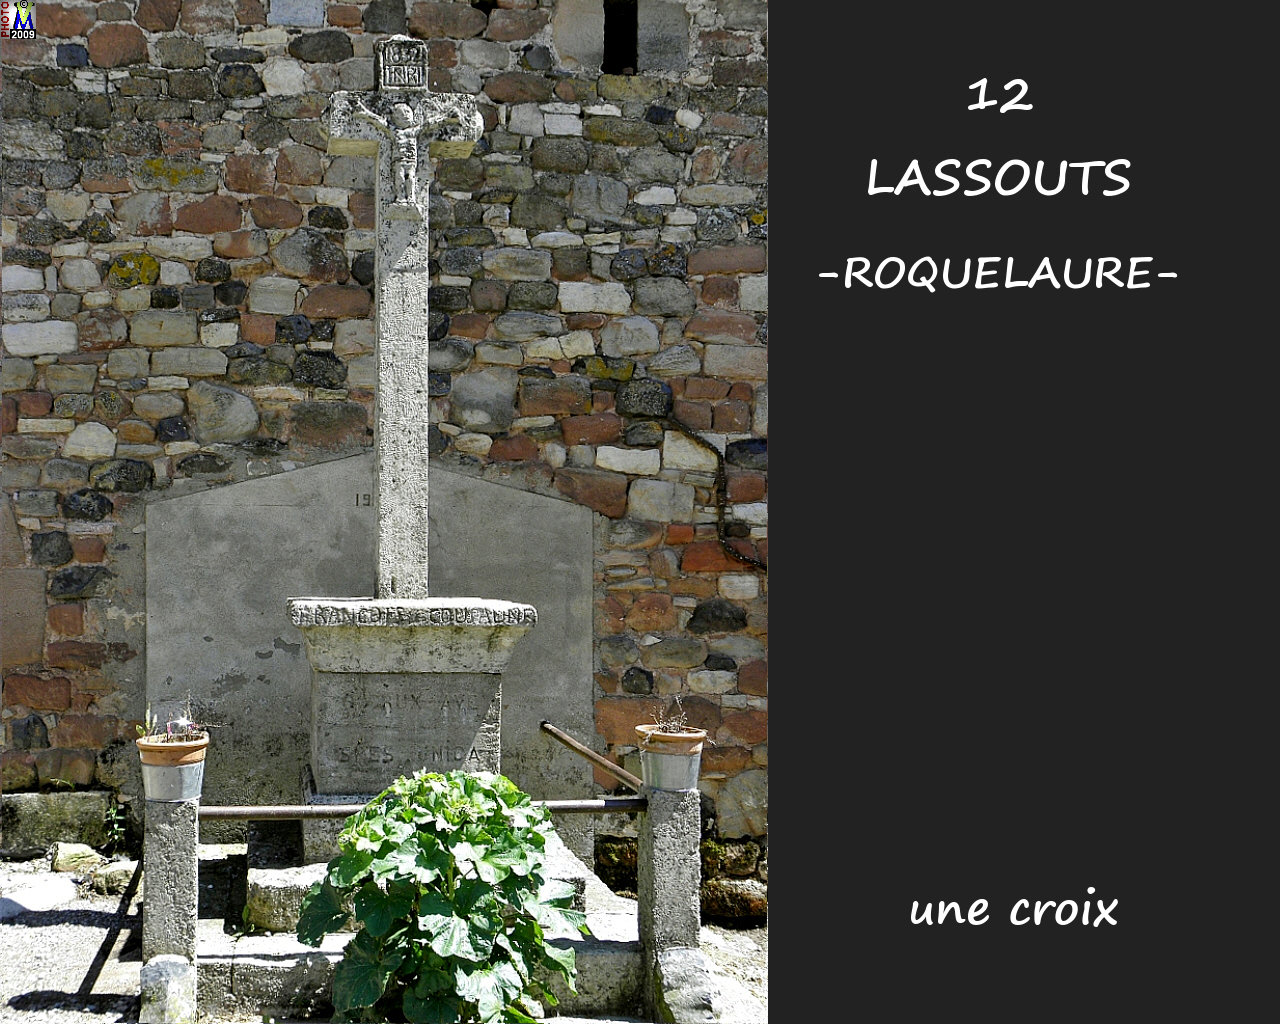 12LASSOUTS-ROQUE_croix_100.jpg